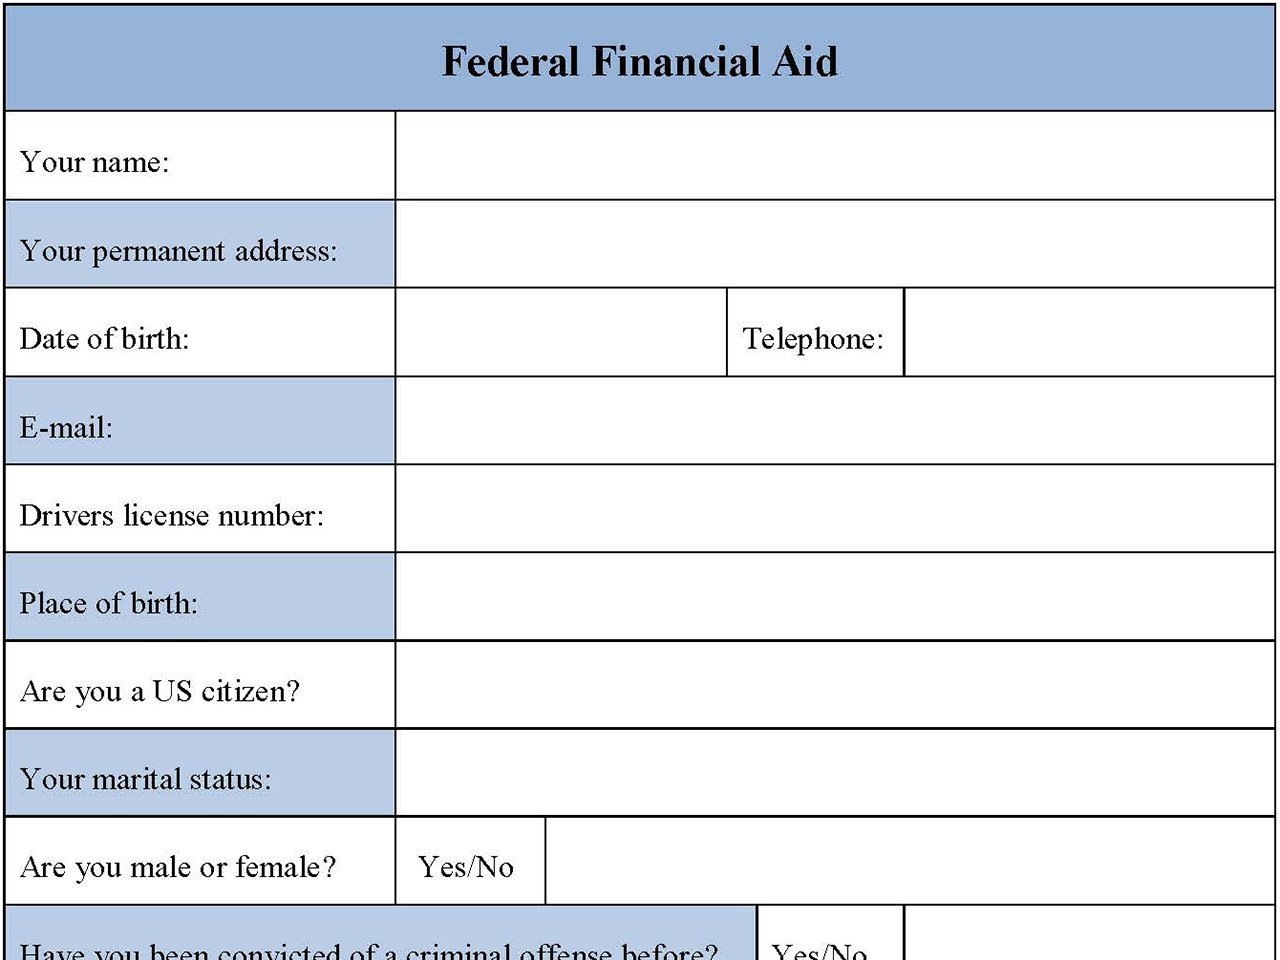 Federal Financial aid form